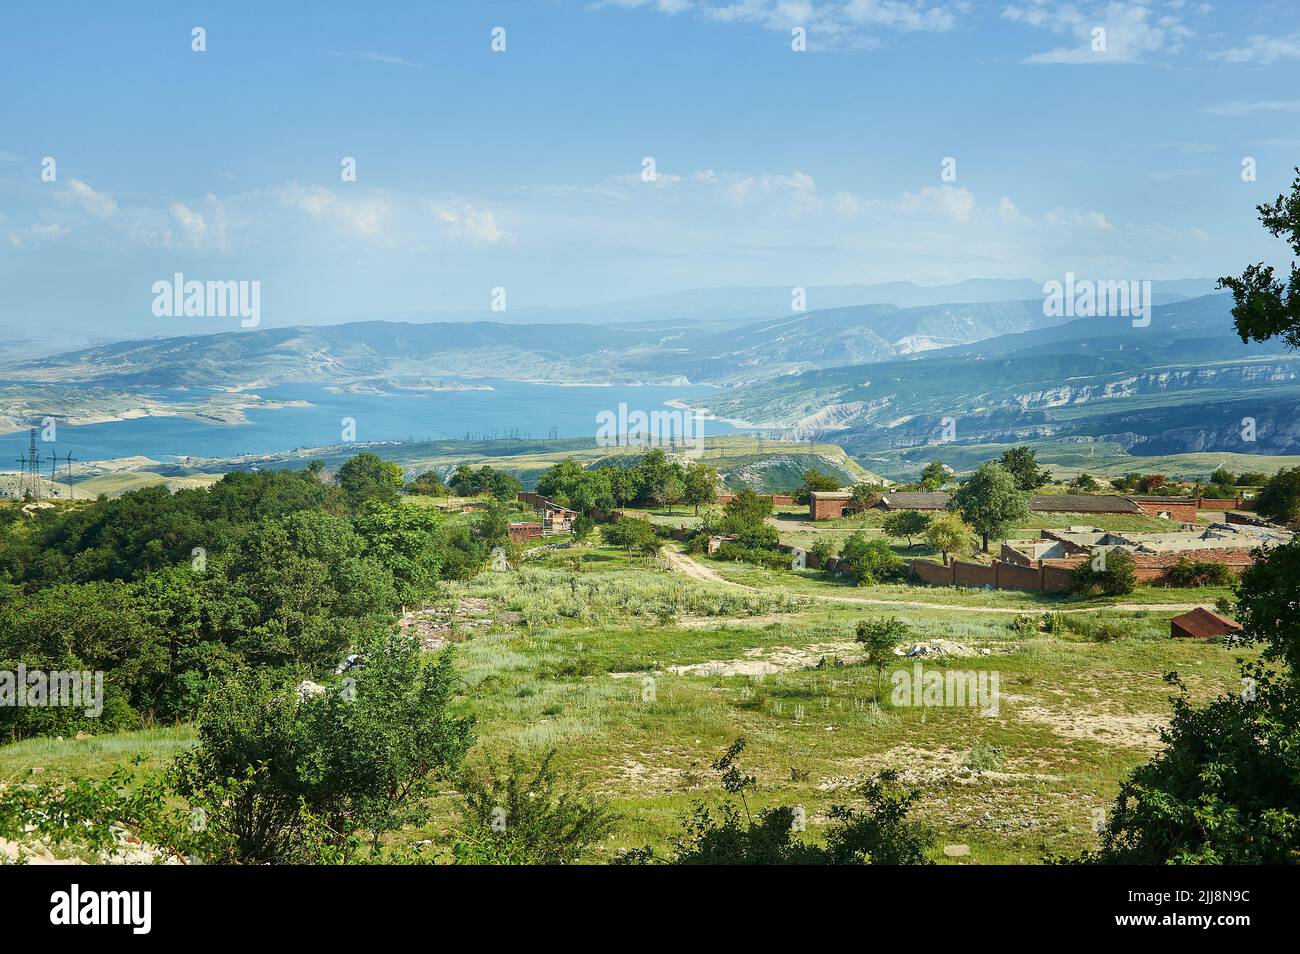 Chirkey embalse Daguestán, paisaje de montaña con camino de tierra en las cercanías del embalse Foto de stock